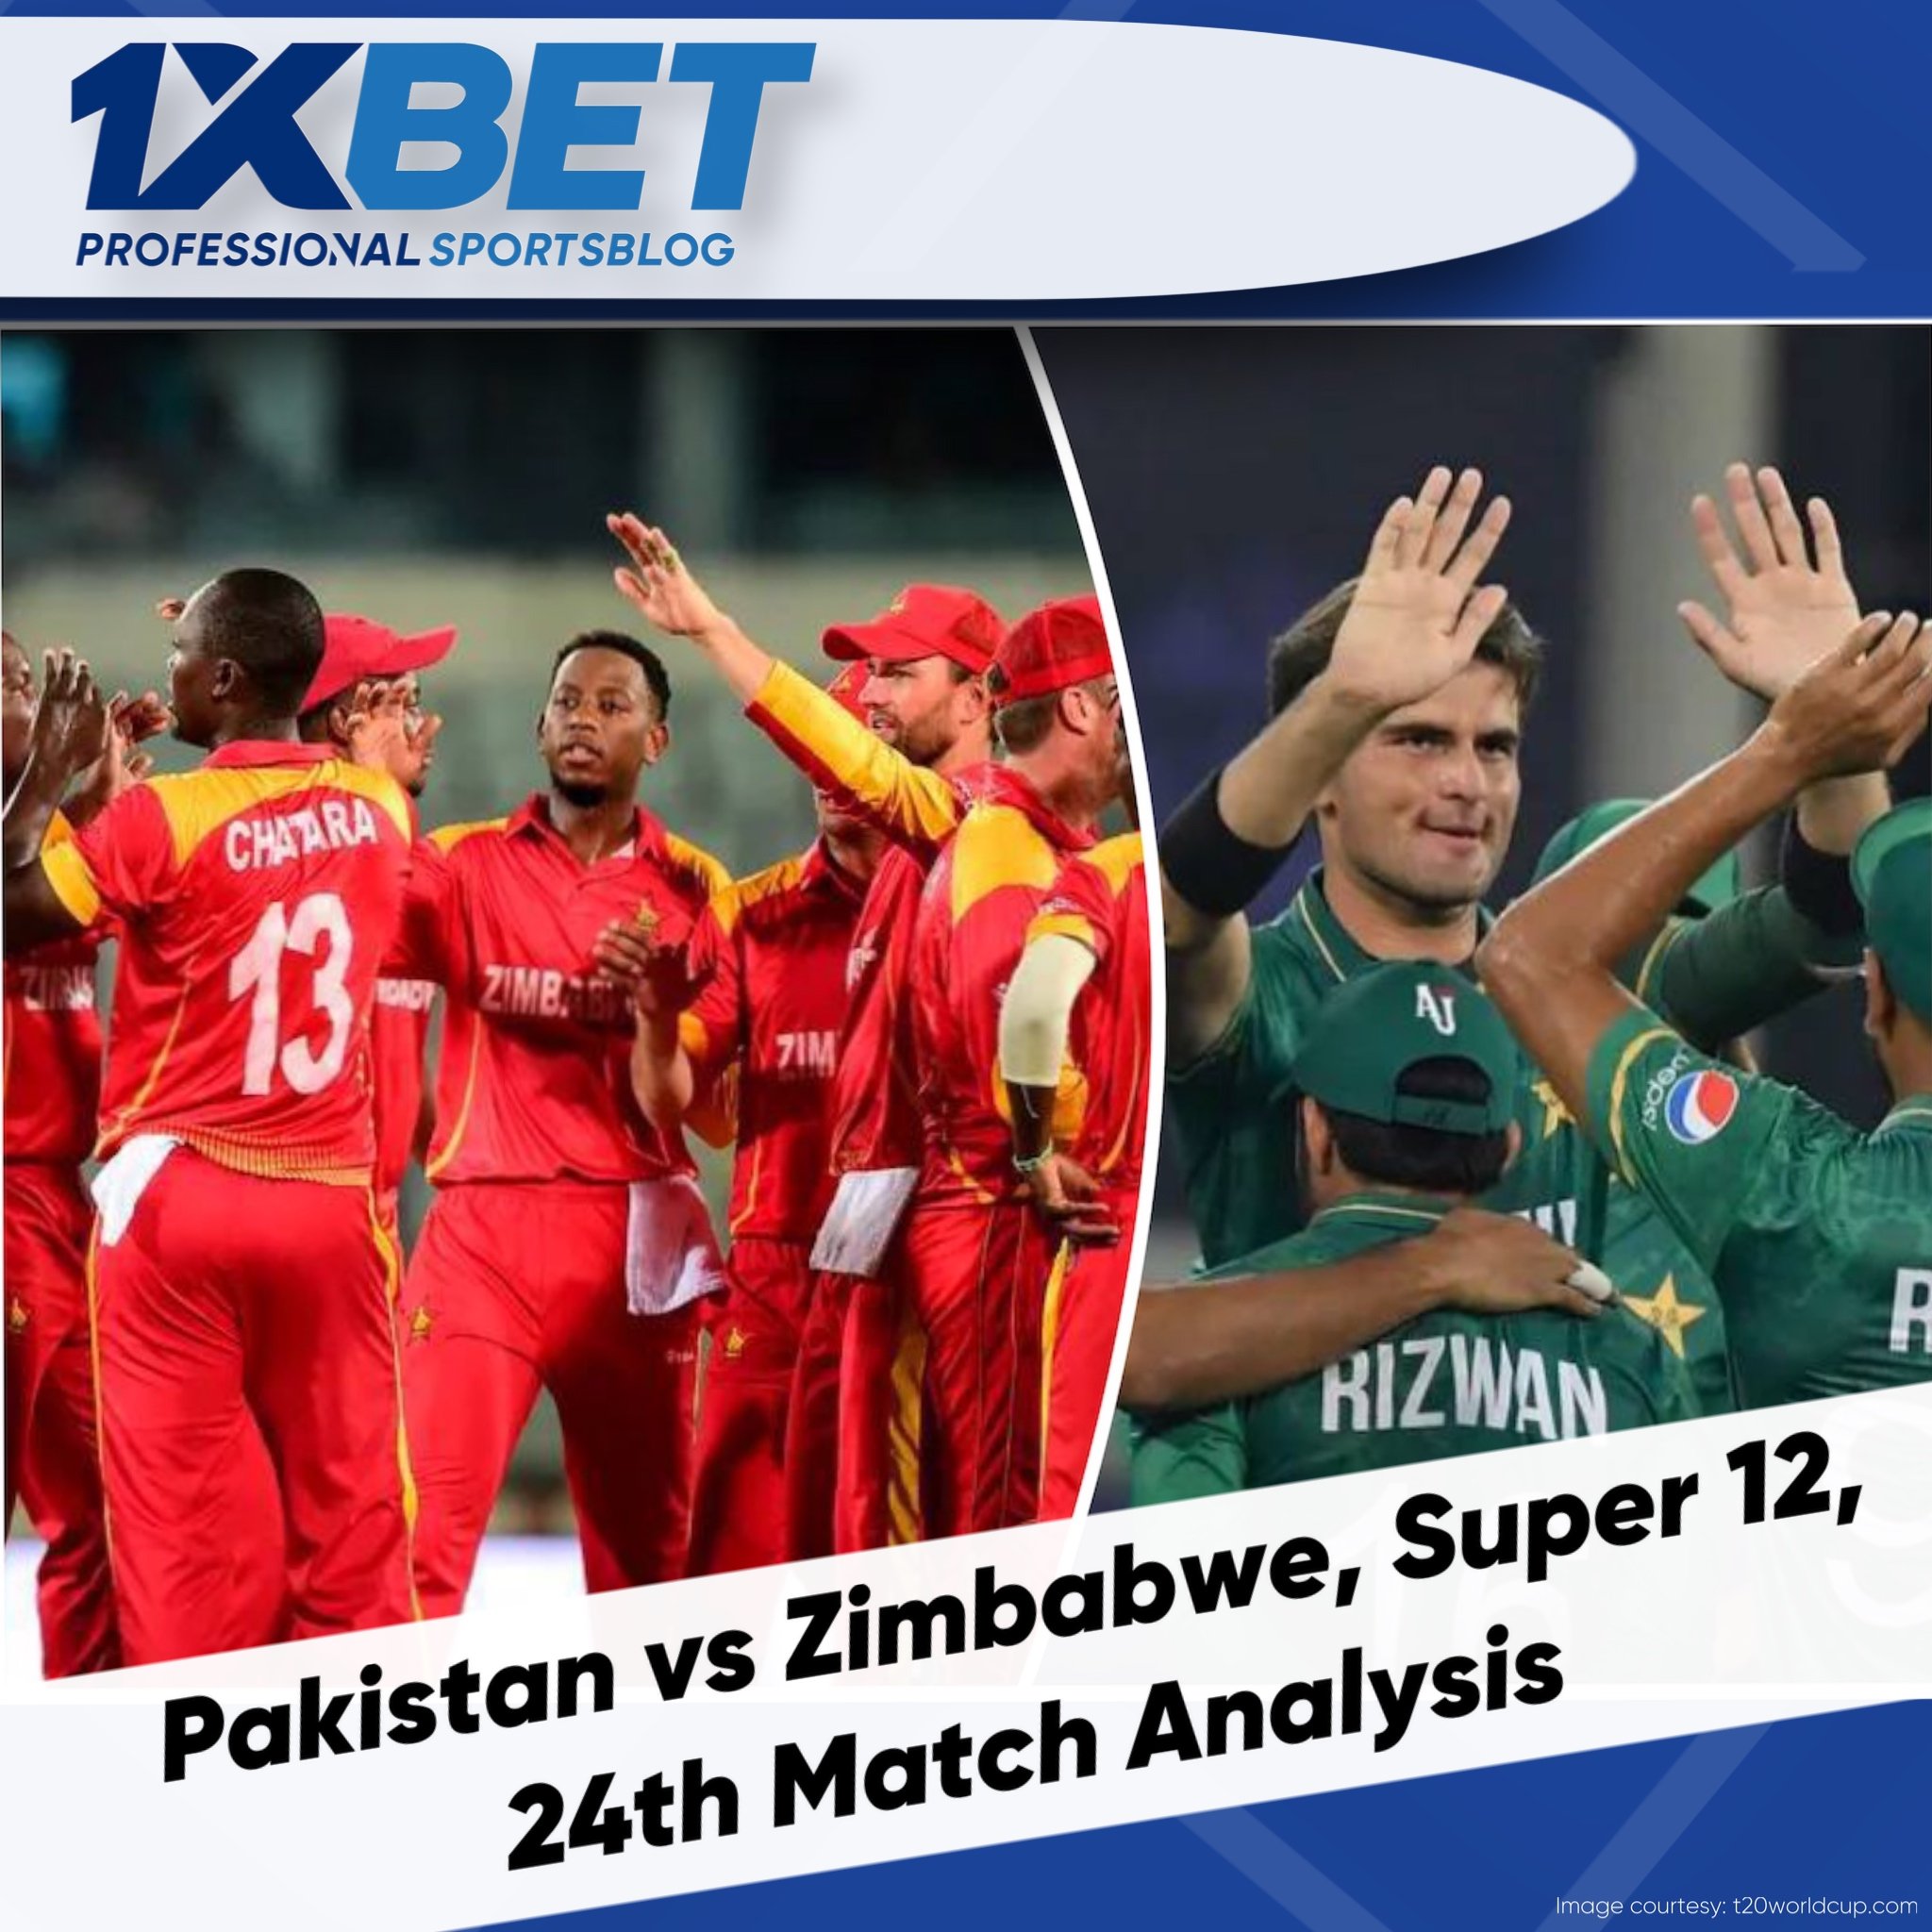 Pakistan vs Zimbabwe, Super 12, 24th Match Analysis